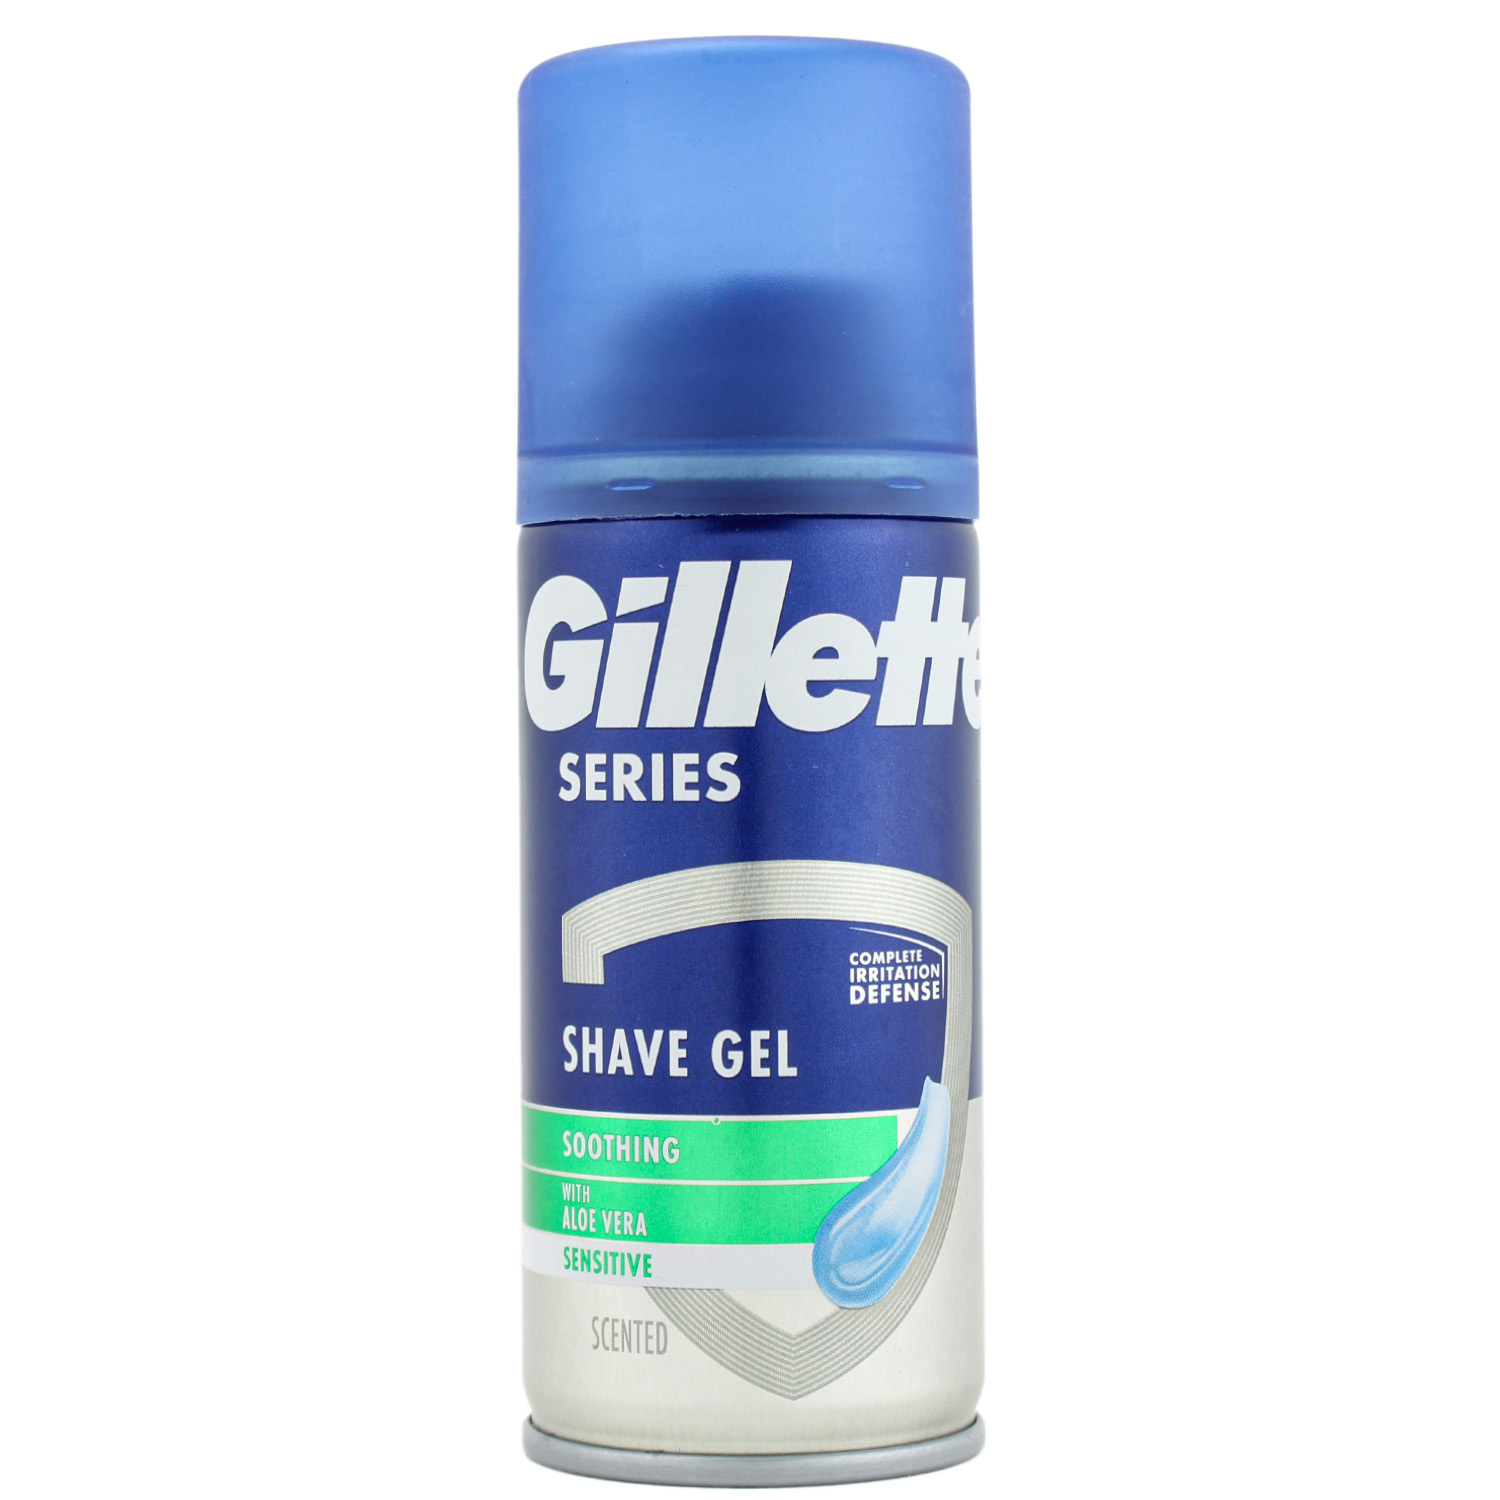 Gillette Series Sensitive Rasiergel als Reisegröße 75ml